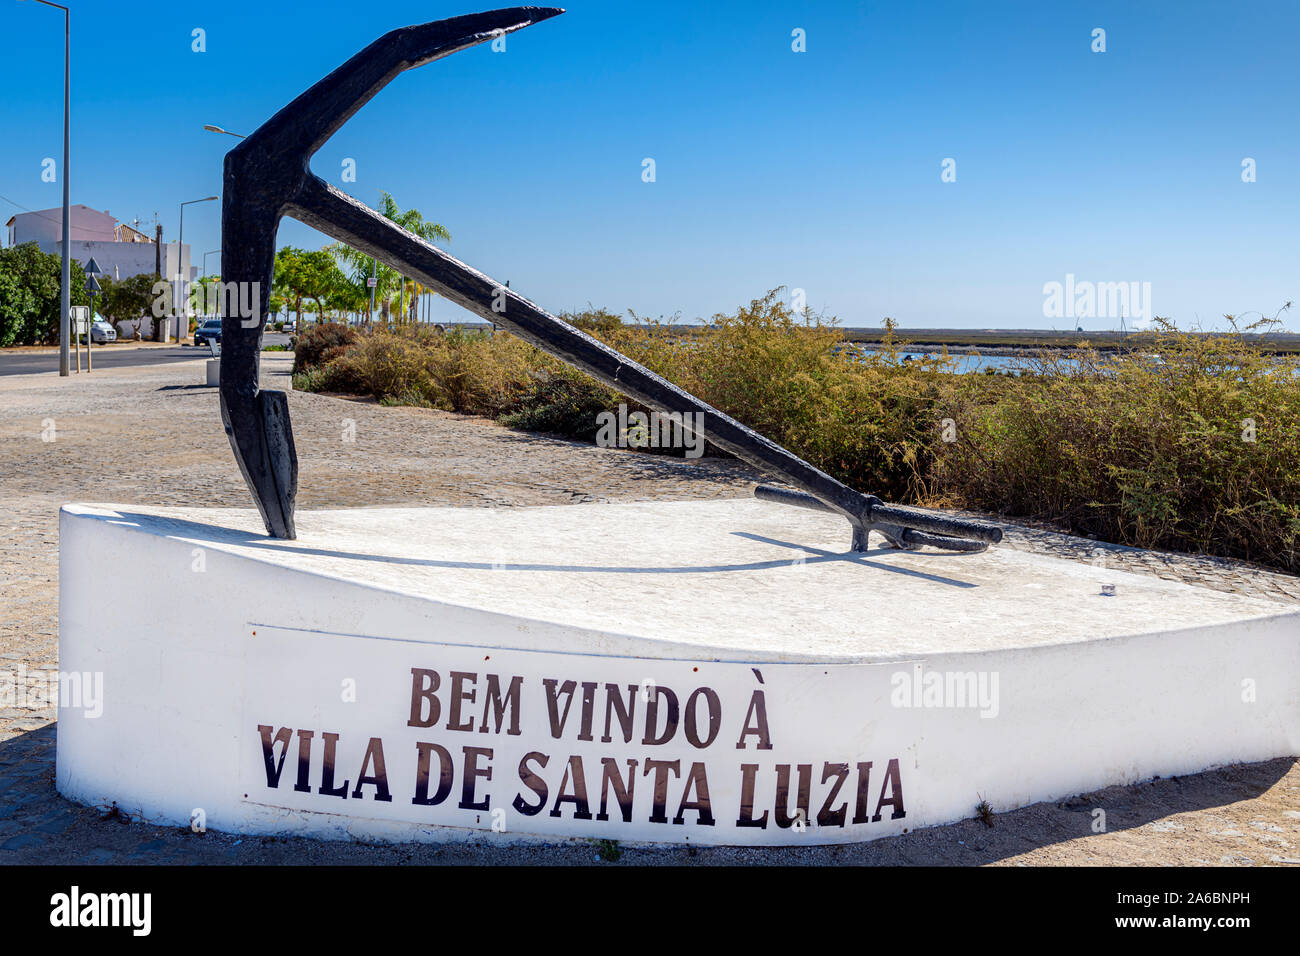 Santa Luzia nom de ville logo et signe de bienvenue Anchor à côté de la Ria Formosa à Santa Luzia, Algarve Portugal Banque D'Images